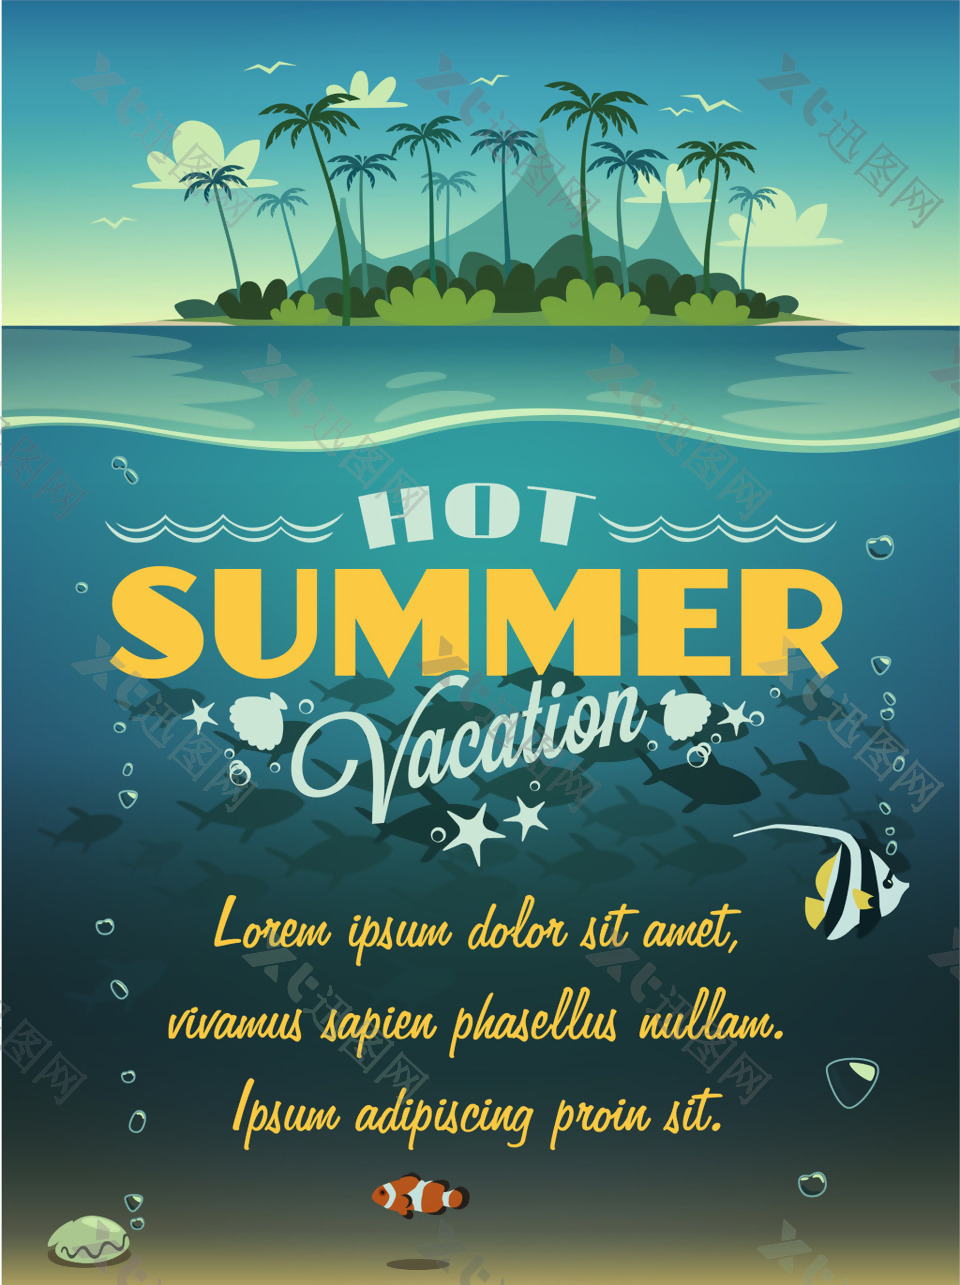 夏季浪漫的海岛风景插画